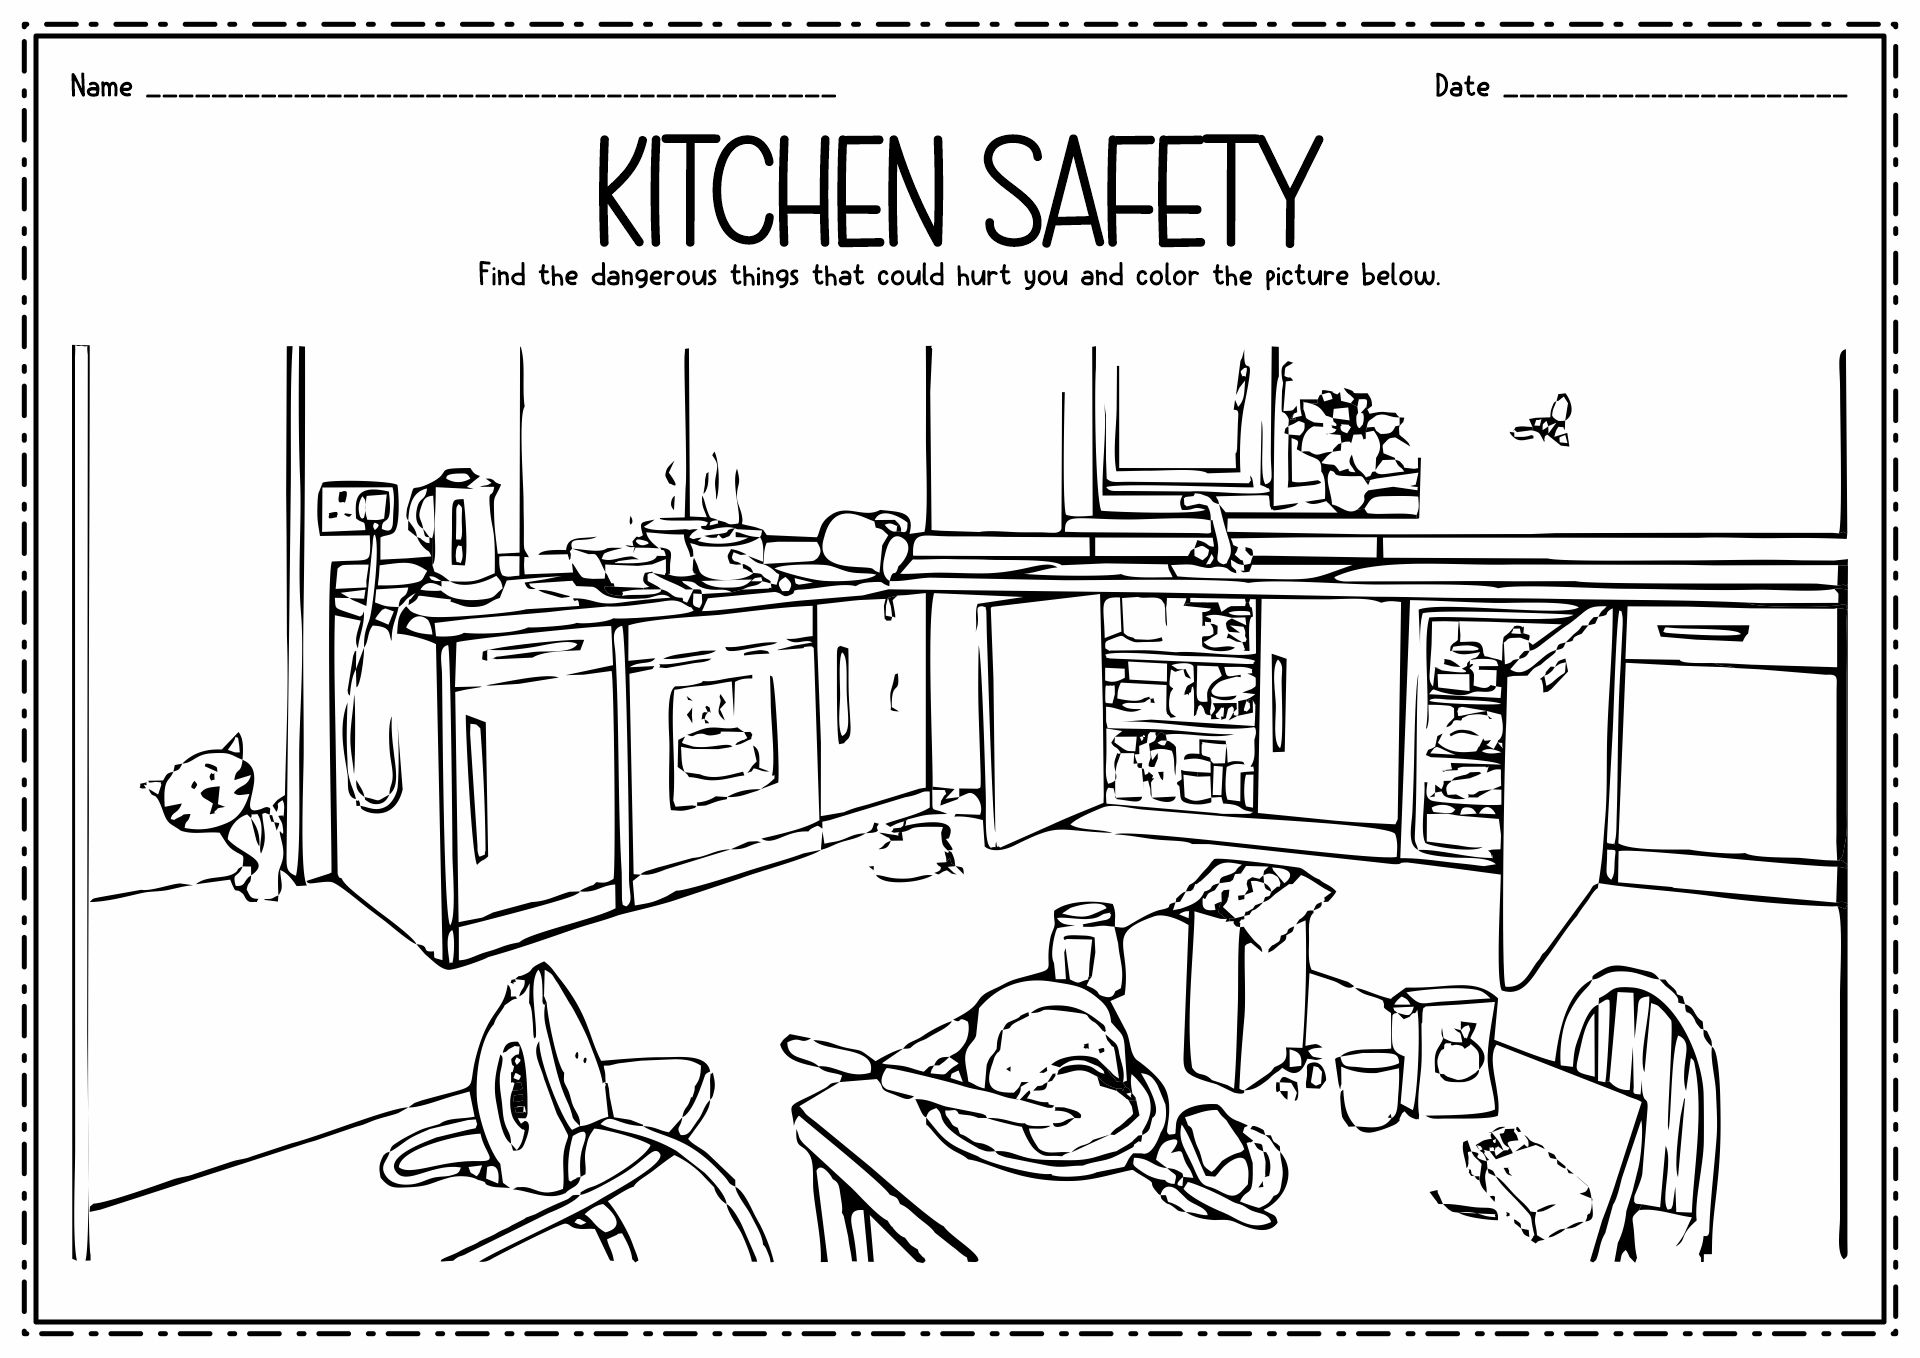 9-best-images-of-kitchen-utensils-worksheet-for-kids-kitchen-coloring